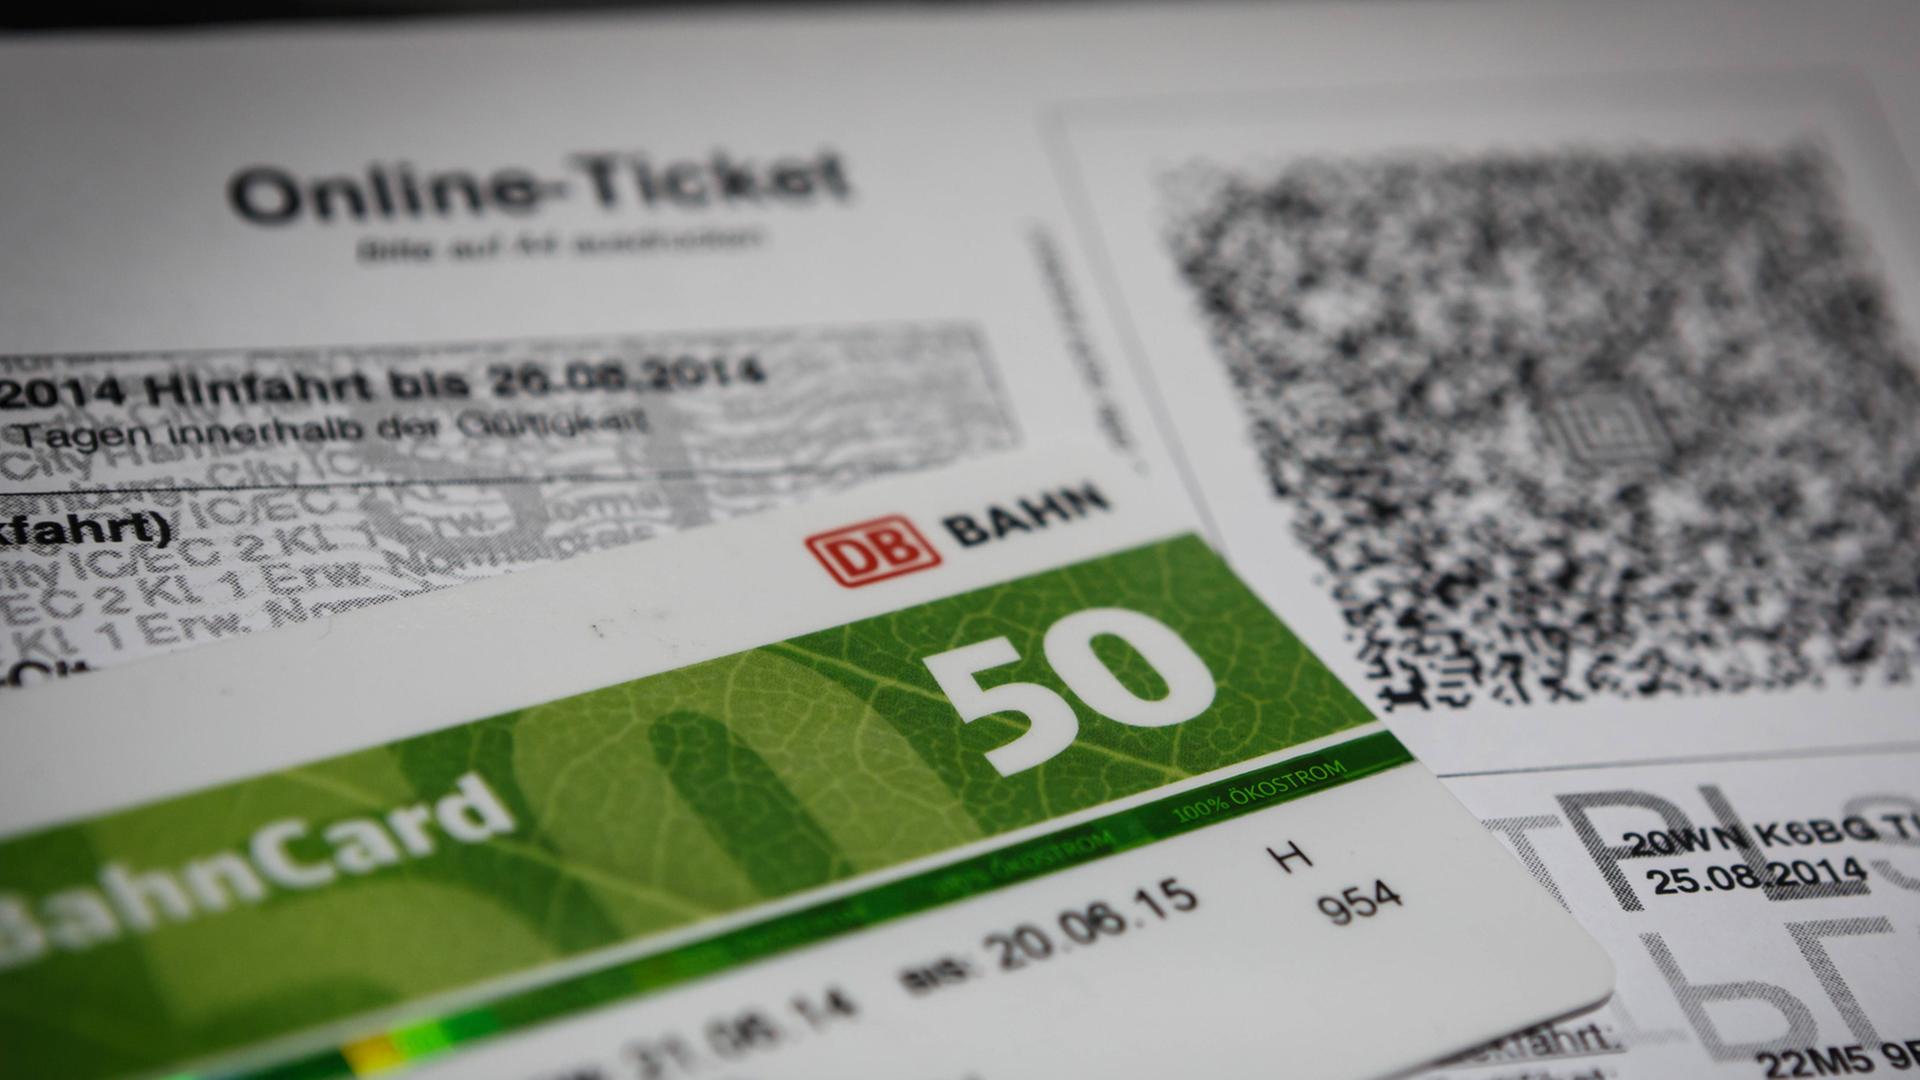 Online-Ticket und Bahncard